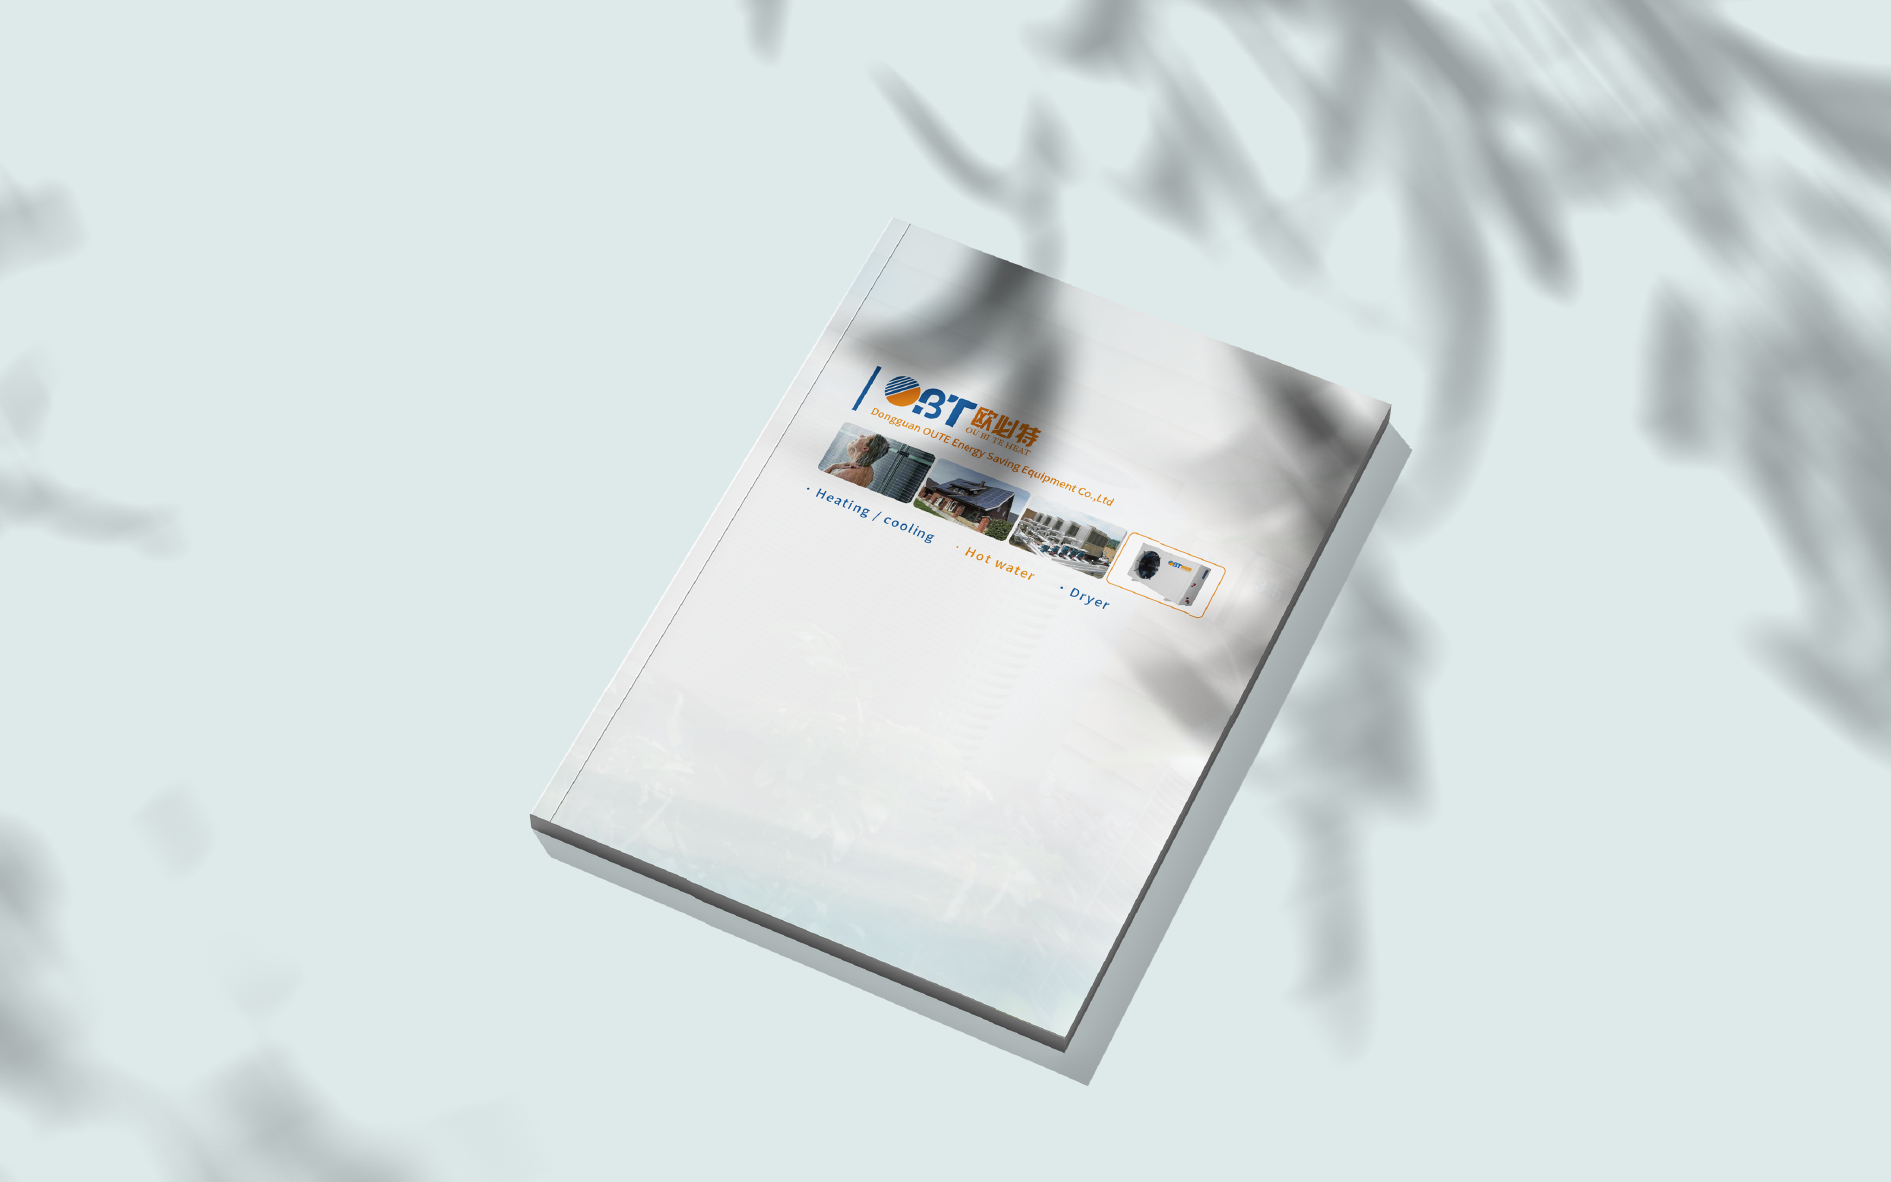 欧必特产品介绍手册设计 飞特网 会员原创画册设计